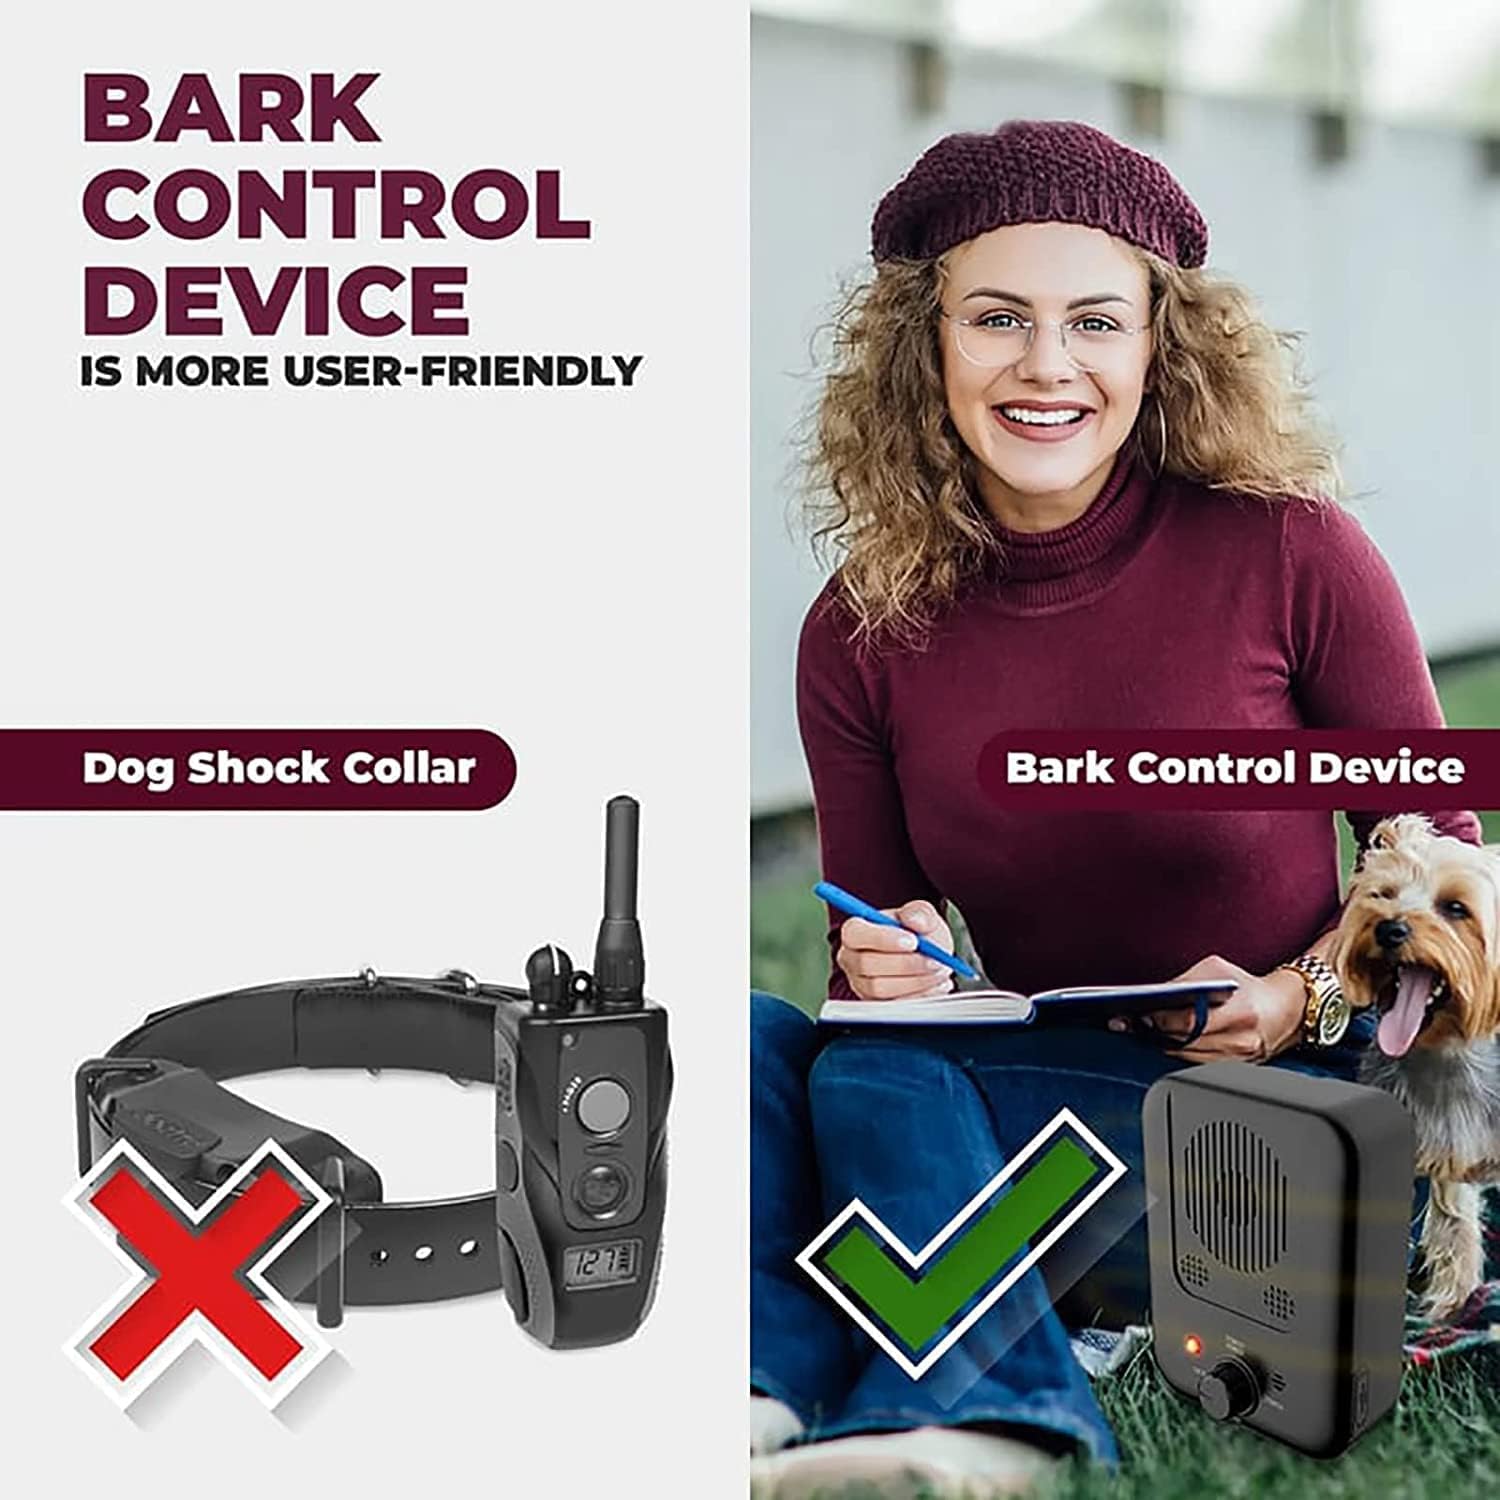 BarkBuddy™ - antiblafapparaat dat uw hond leert niet te blaffen!